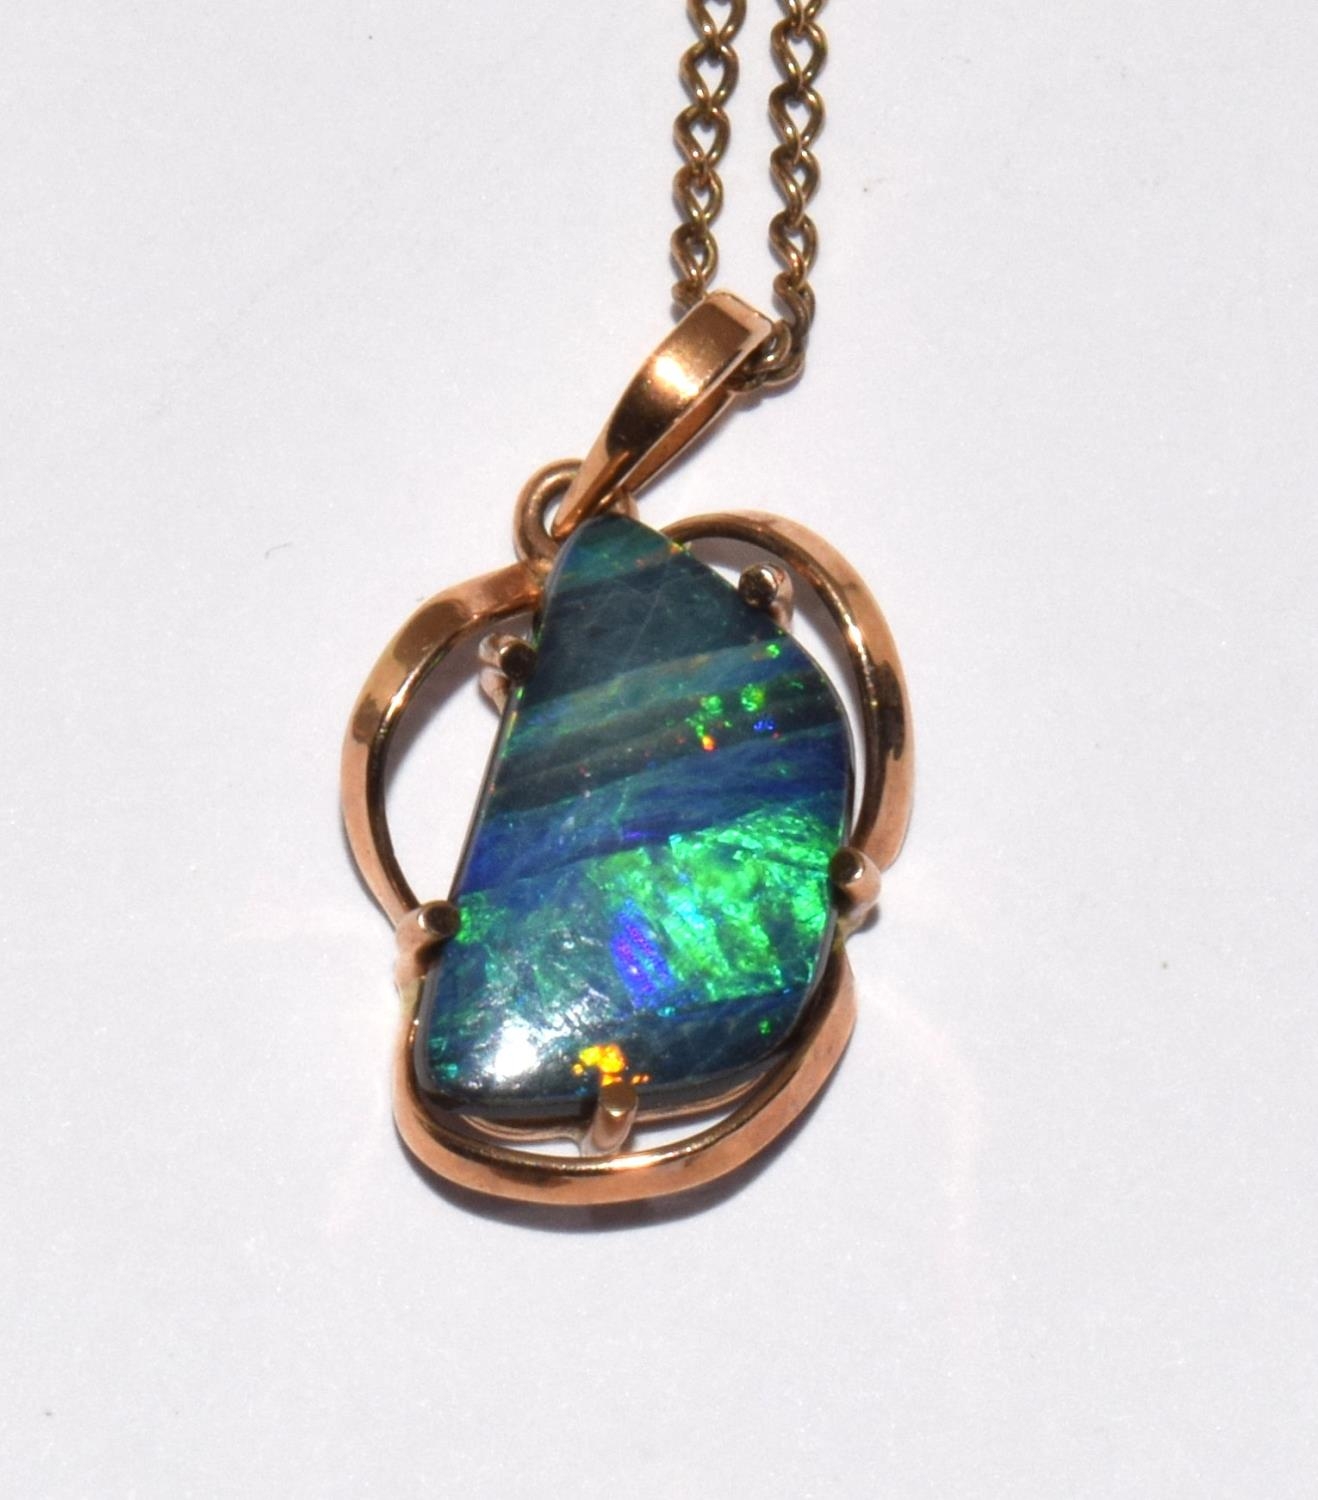 9ct gold Boulder Opal necklace pendant chain 54cm pendant 2.2cm - Image 2 of 6